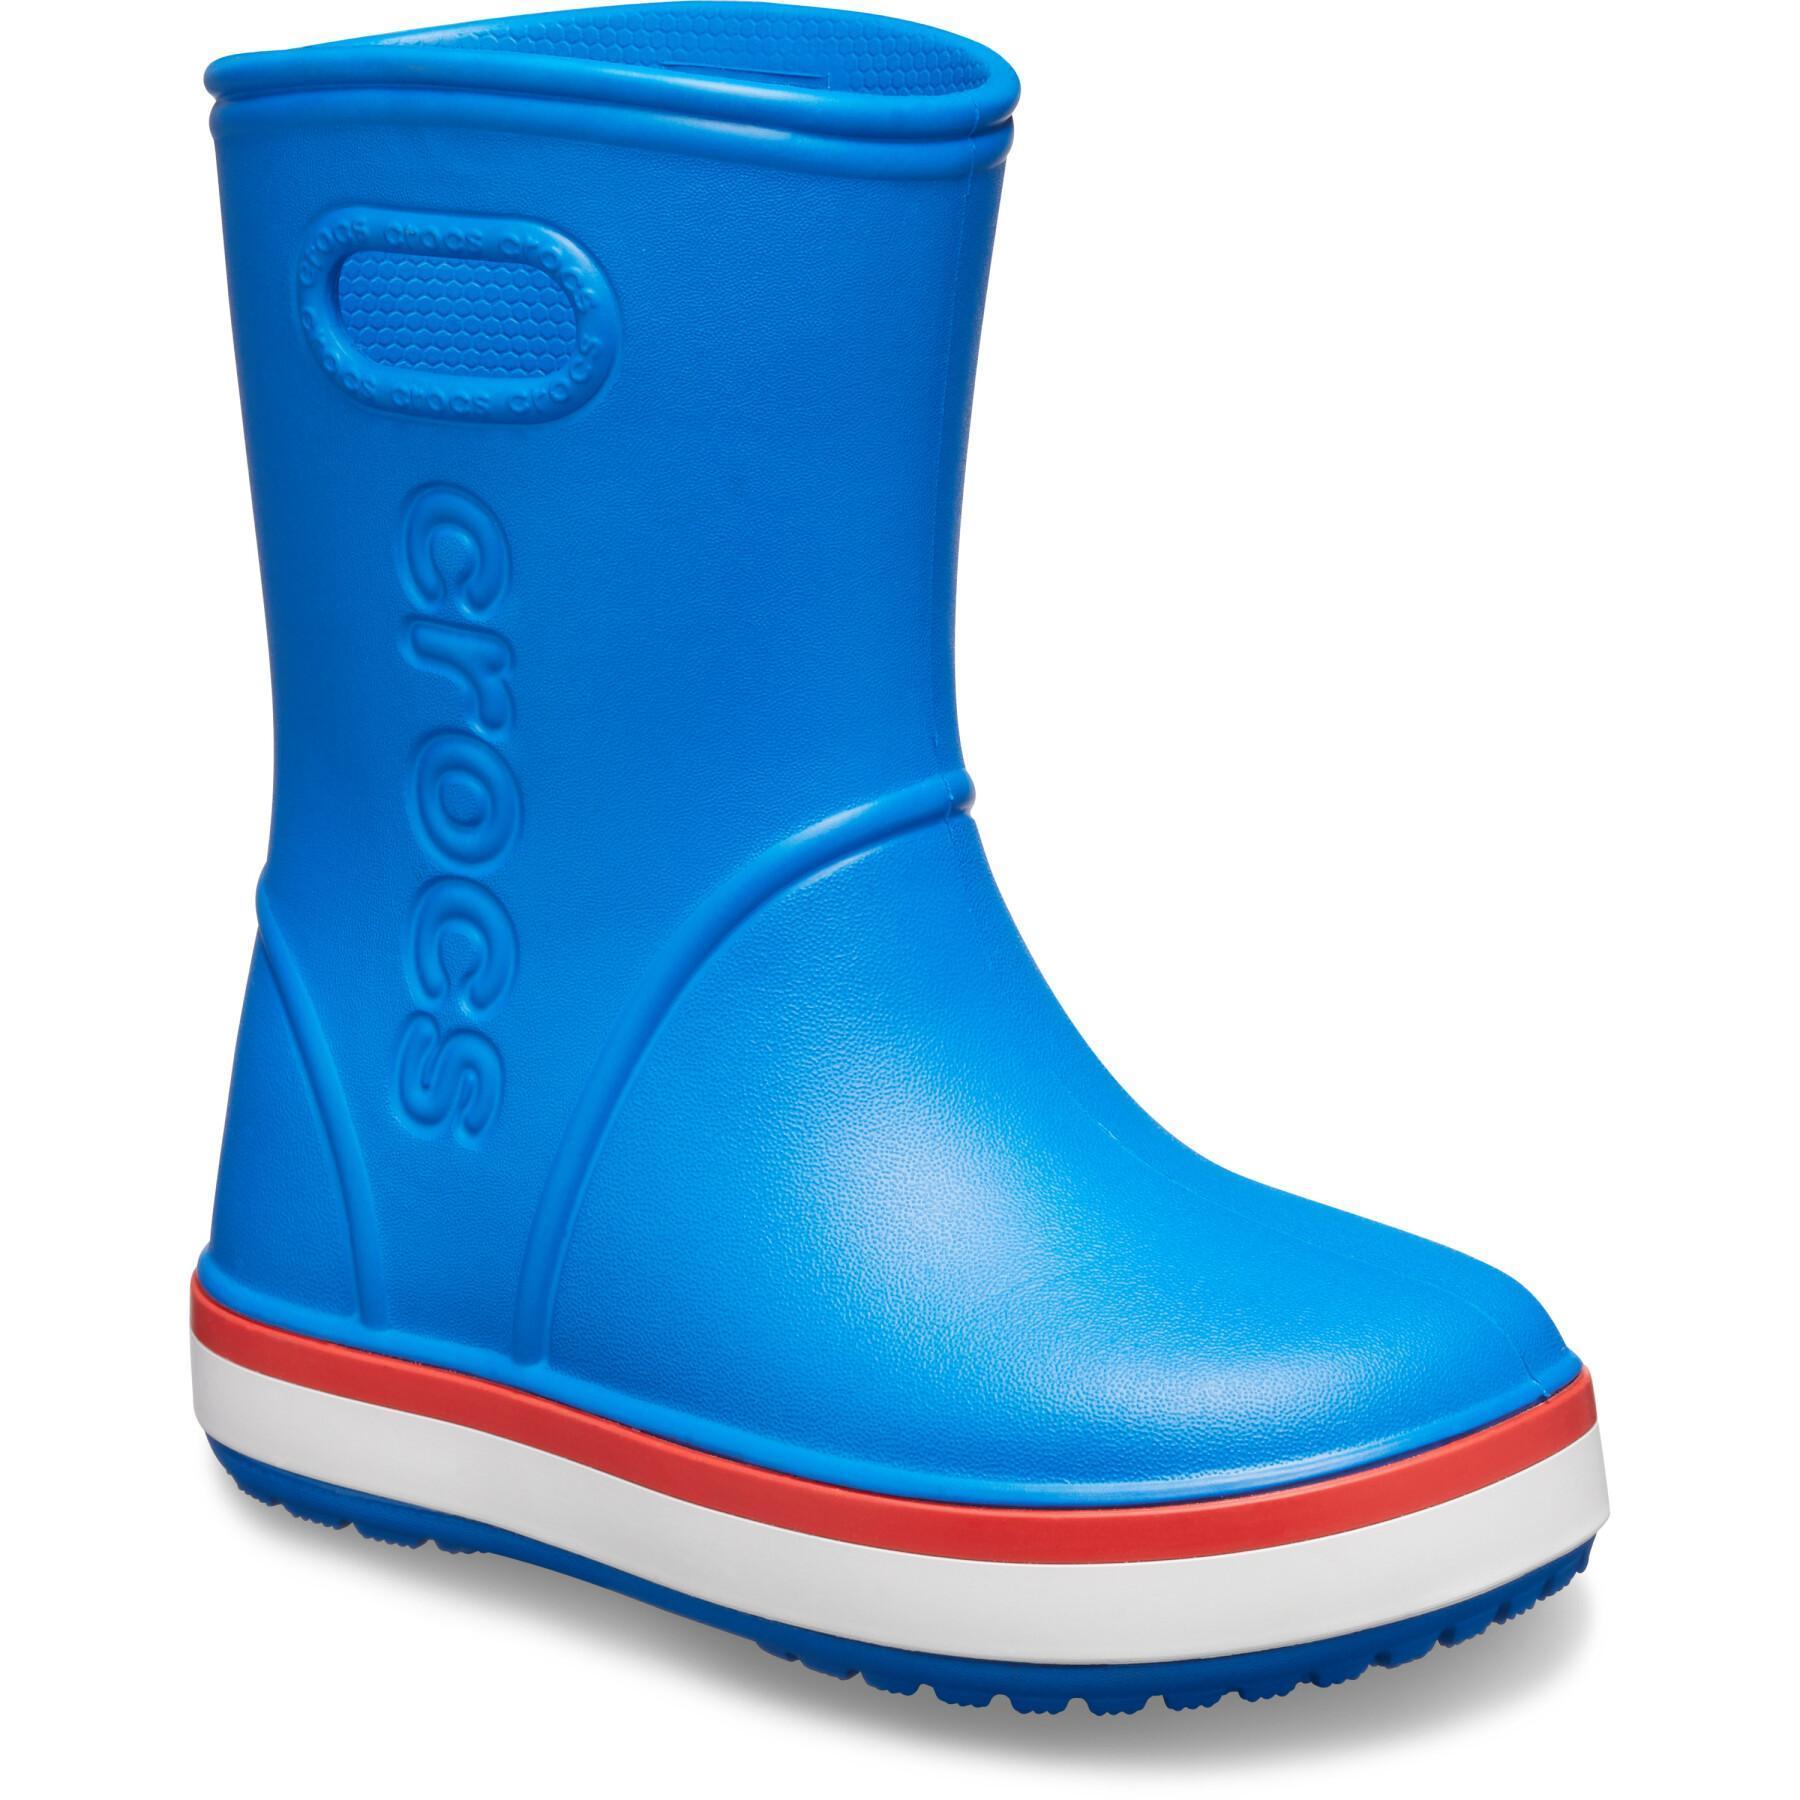 Stivali da pioggia per bambini Crocs crocband rain